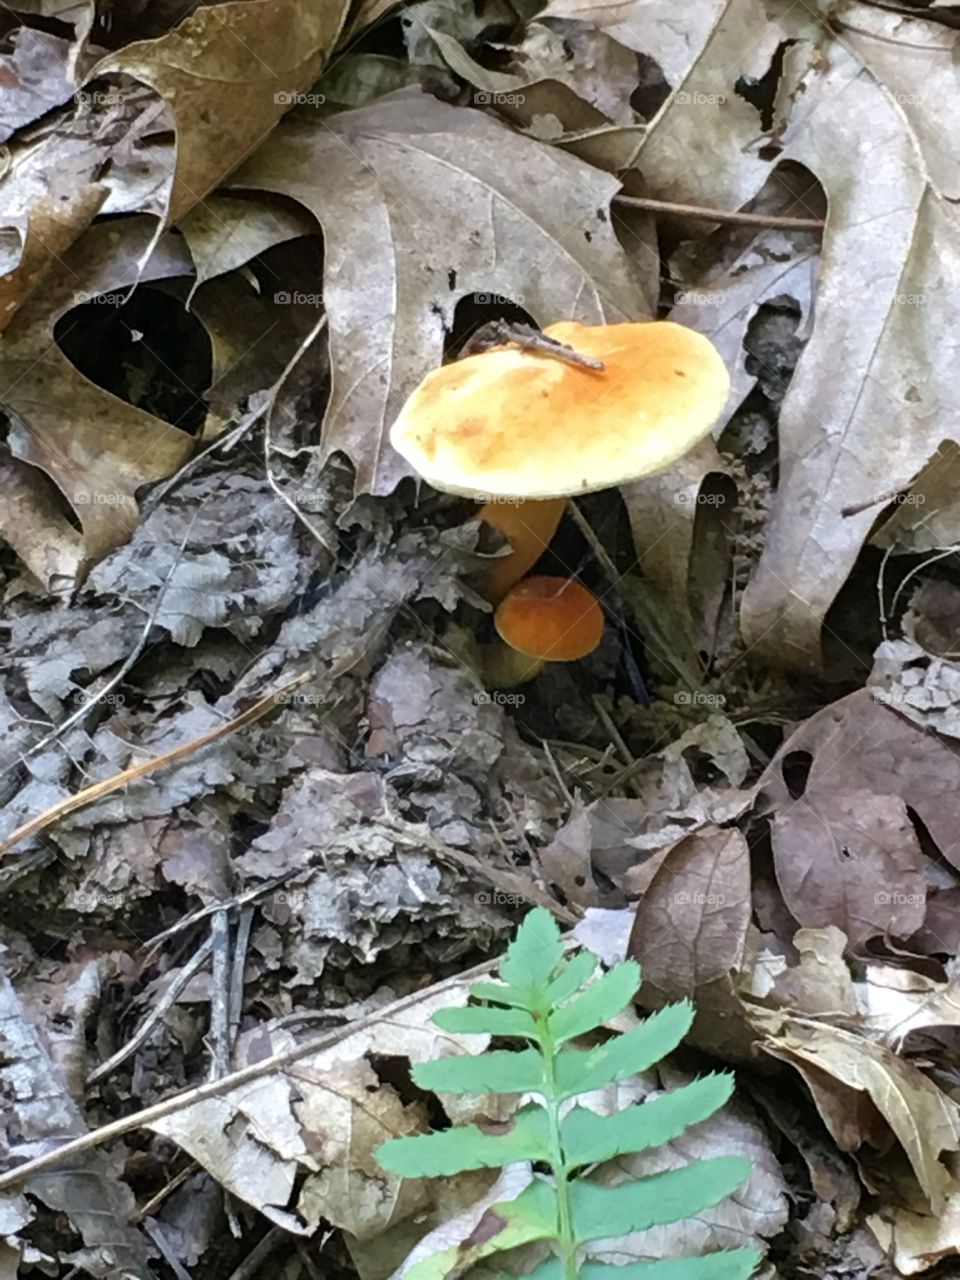 Fall, Fungus, Nature, Leaf, Mushroom